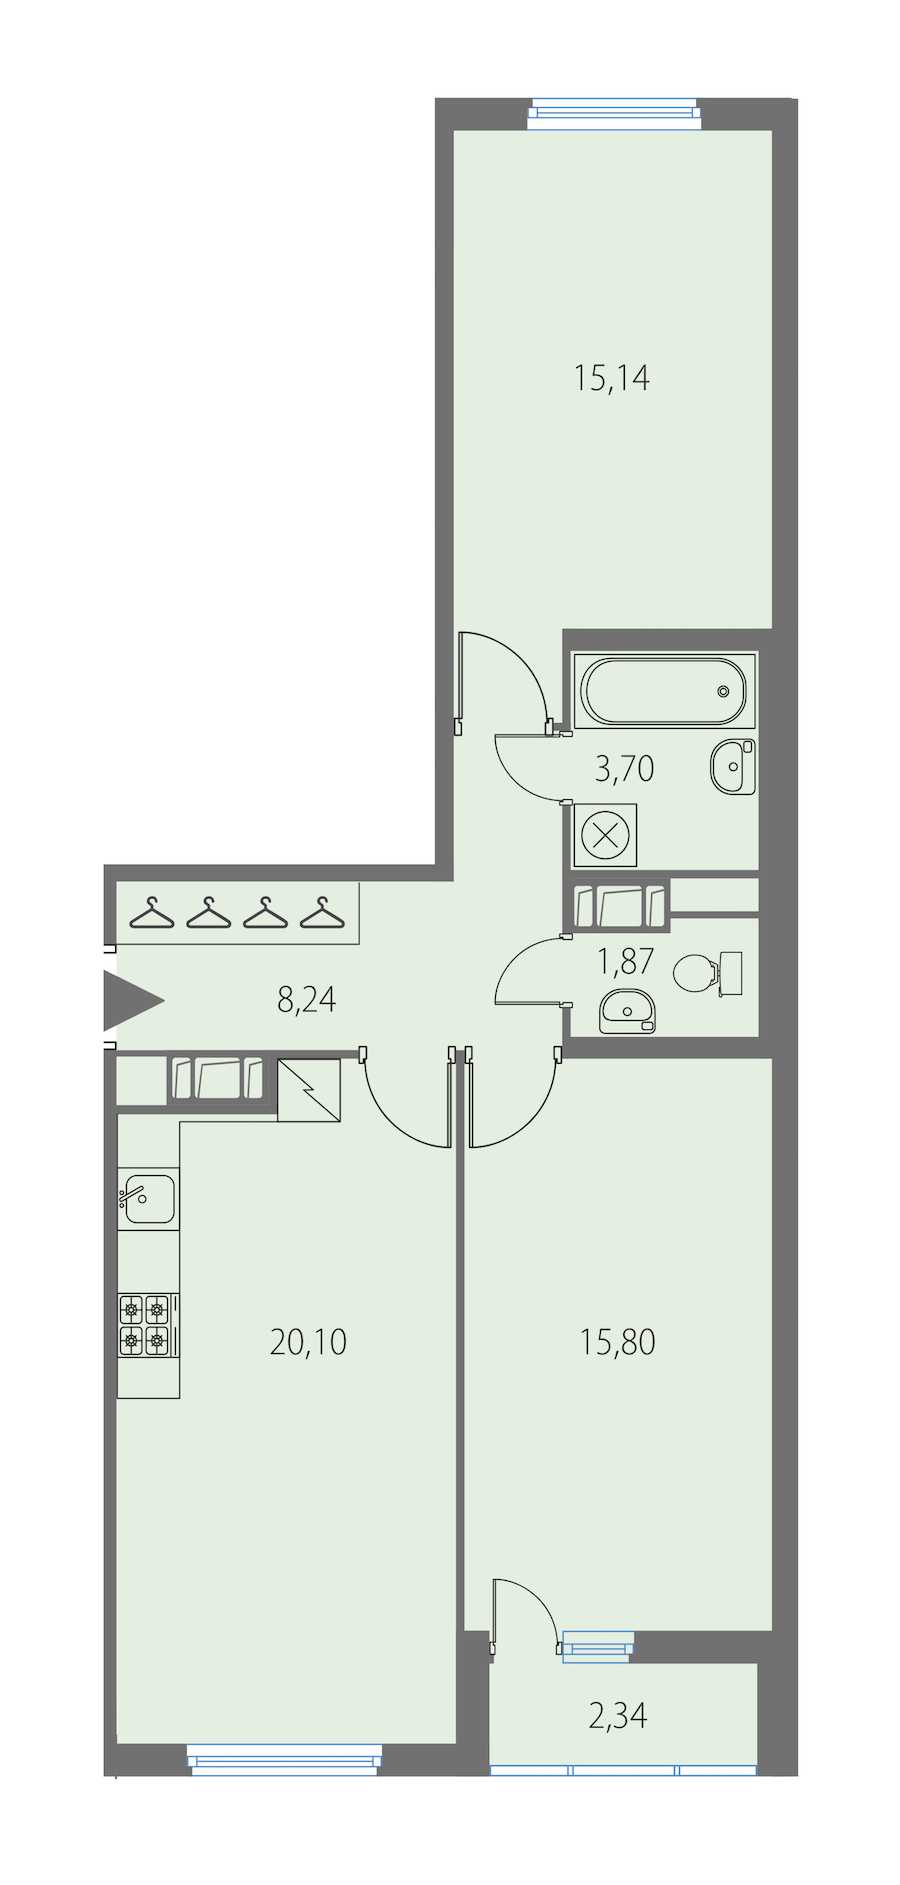 Двухкомнатная квартира в KVS: площадь 64.85 м2 , этаж: 6 – купить в Санкт-Петербурге